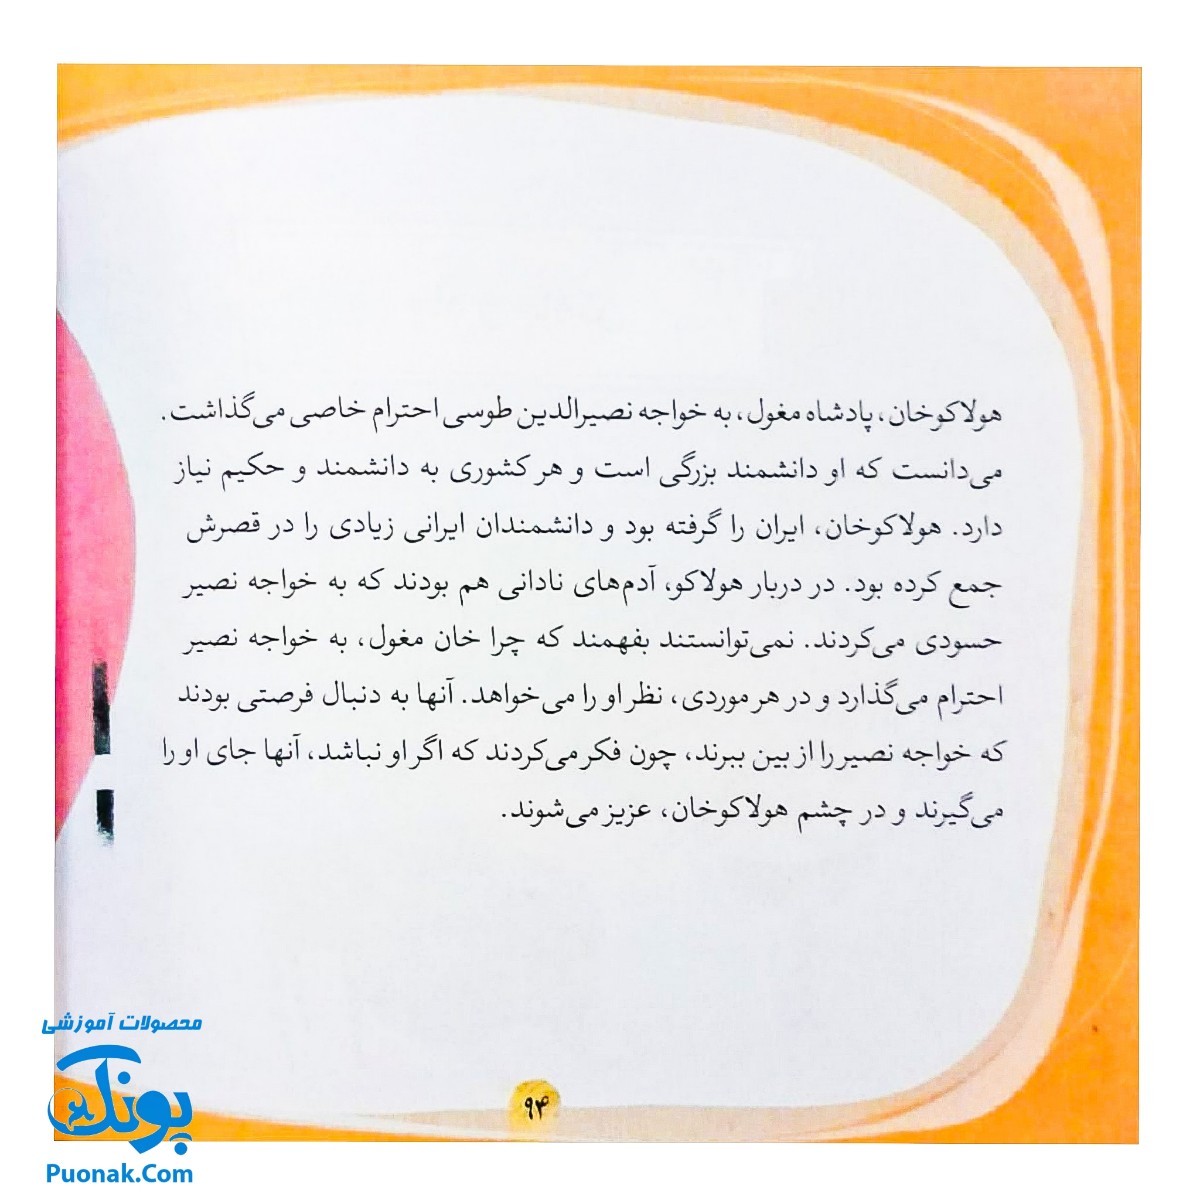 کتاب مجموعه قصه های قشنگ و قدیمی جلد ۱۵ پانزدهم ۱۲ قصه از زندگی خواجه نصیر طوسی